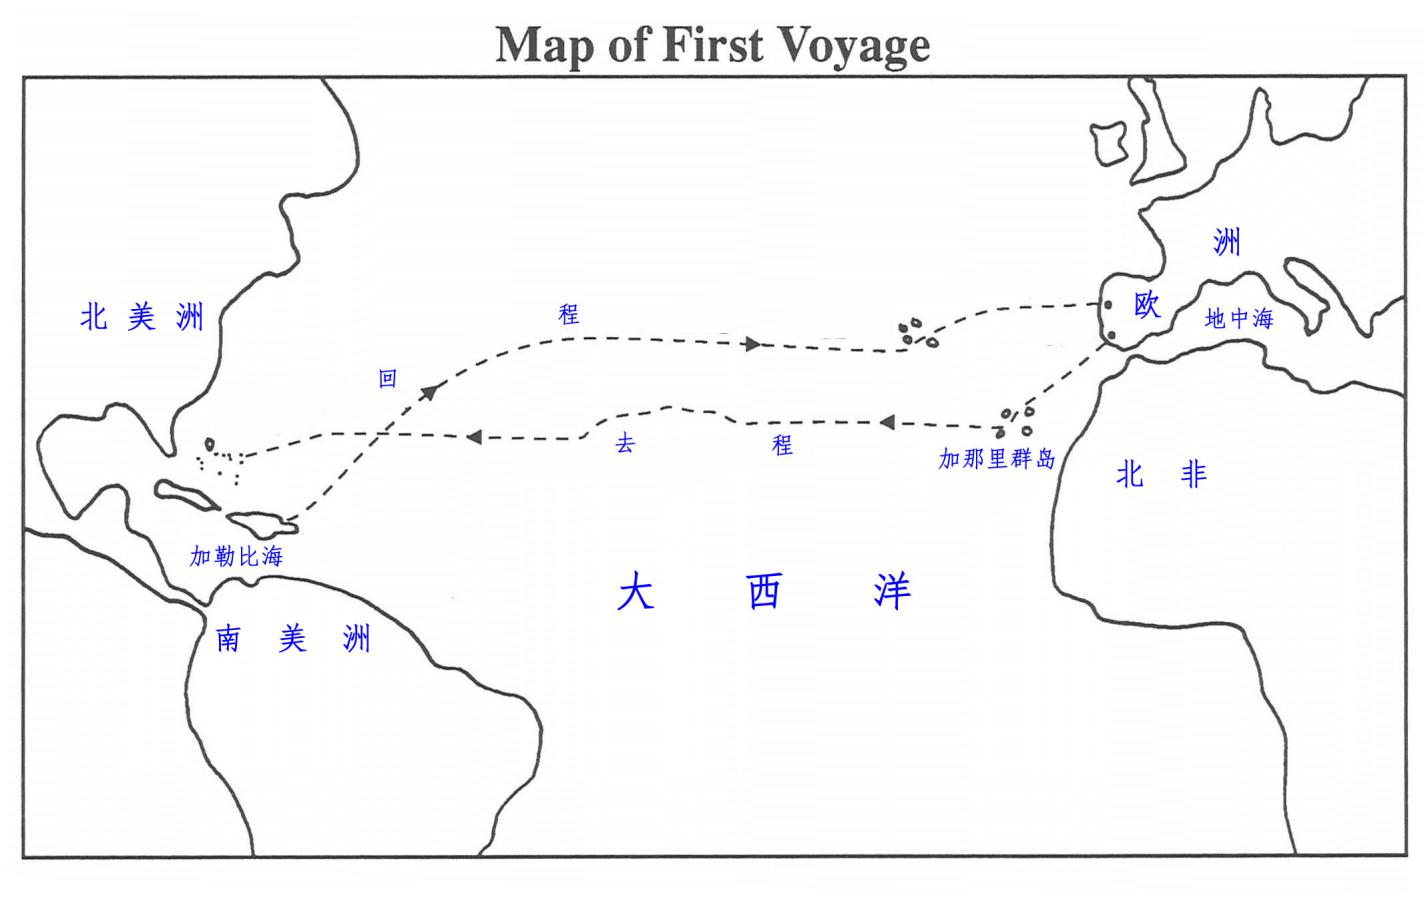 图1 哥伦布第一次航行美洲的线路 142.jpg